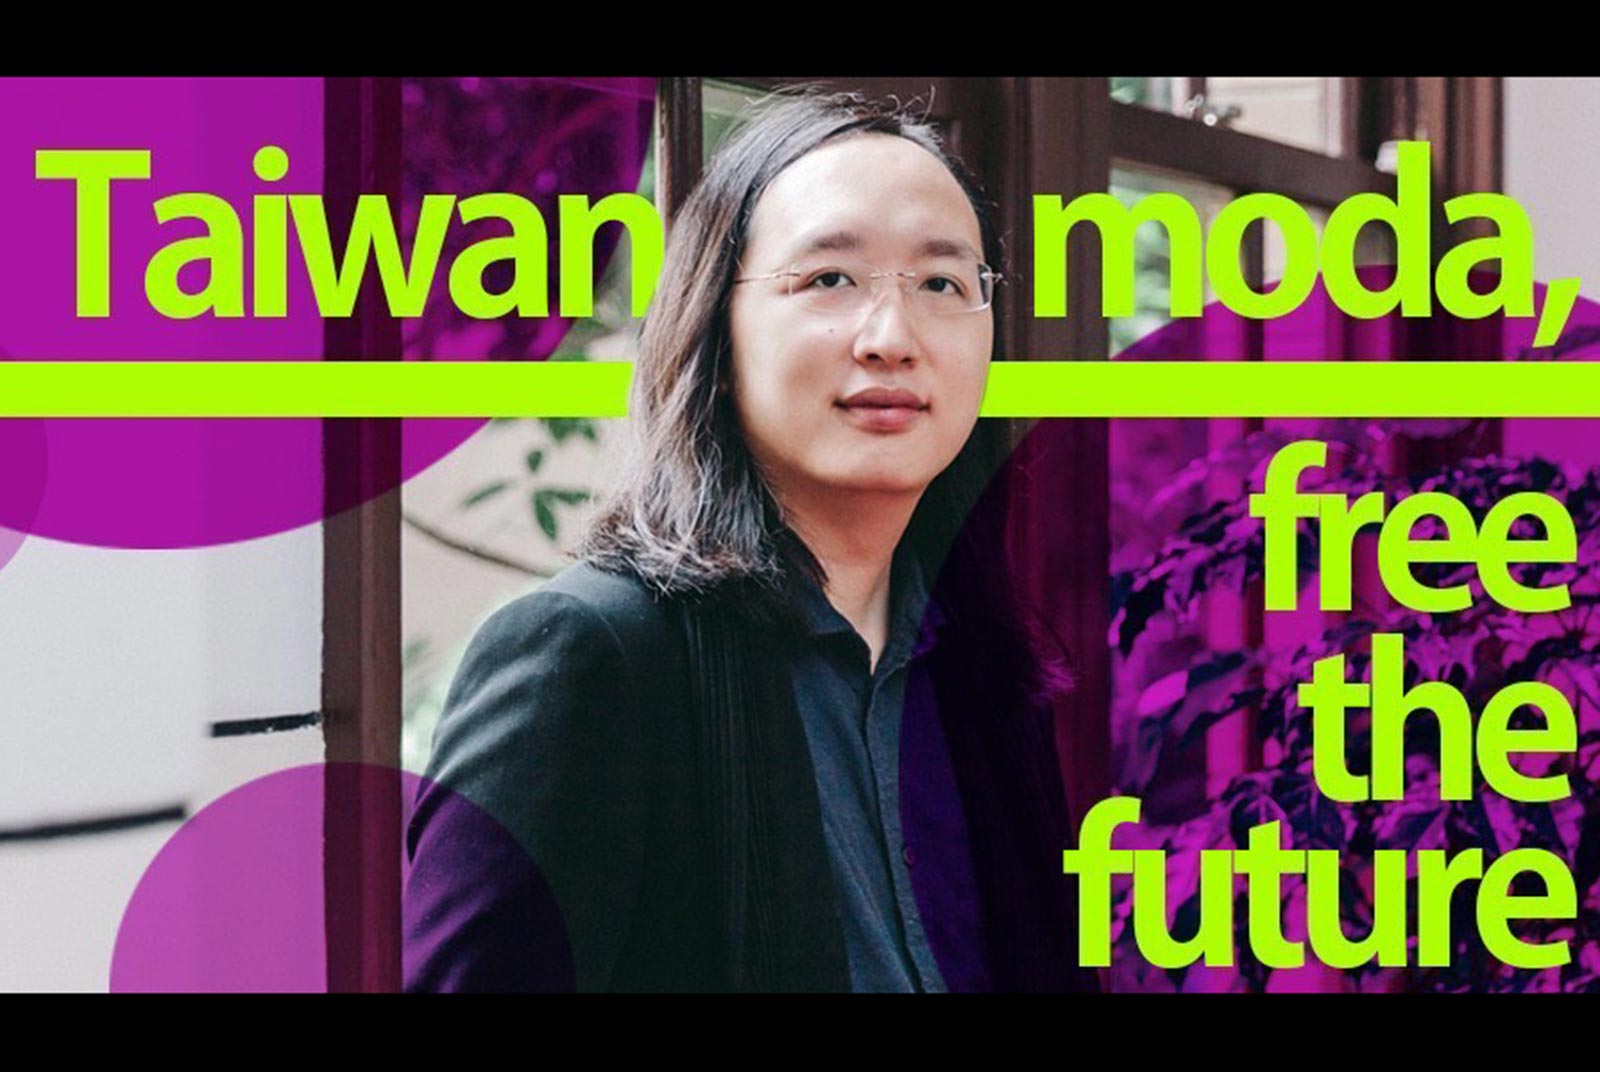 Taiwan moda, free the future